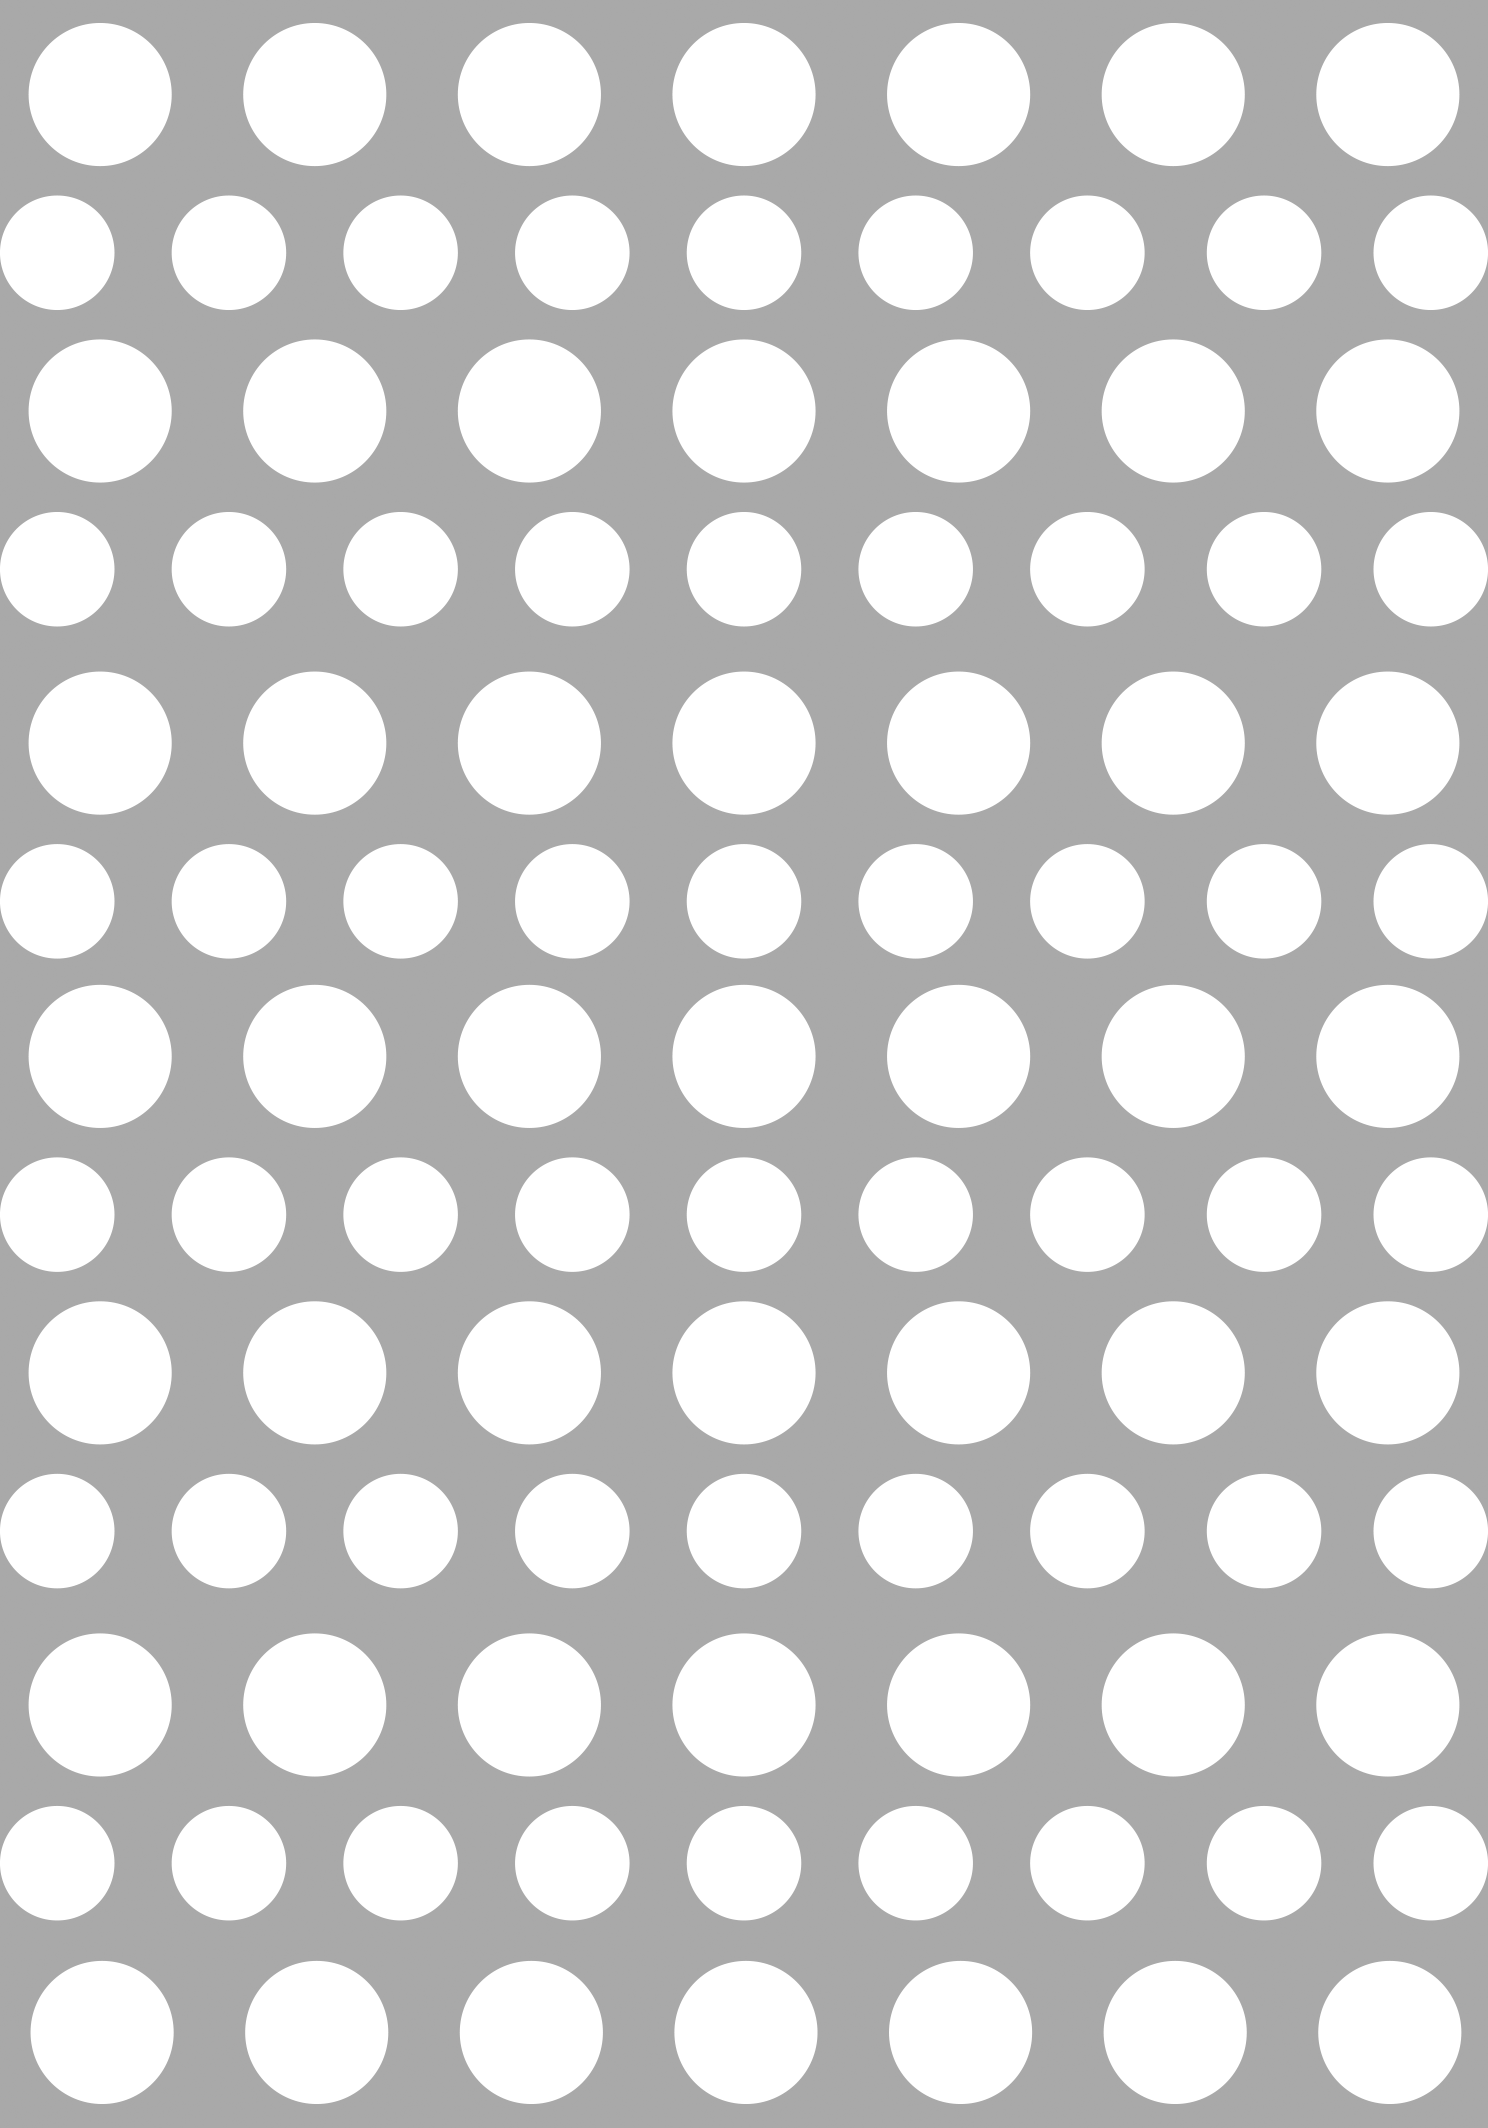 PRI00624 - Muster Rub-On Stickerbogen Deko Kreise Weiß